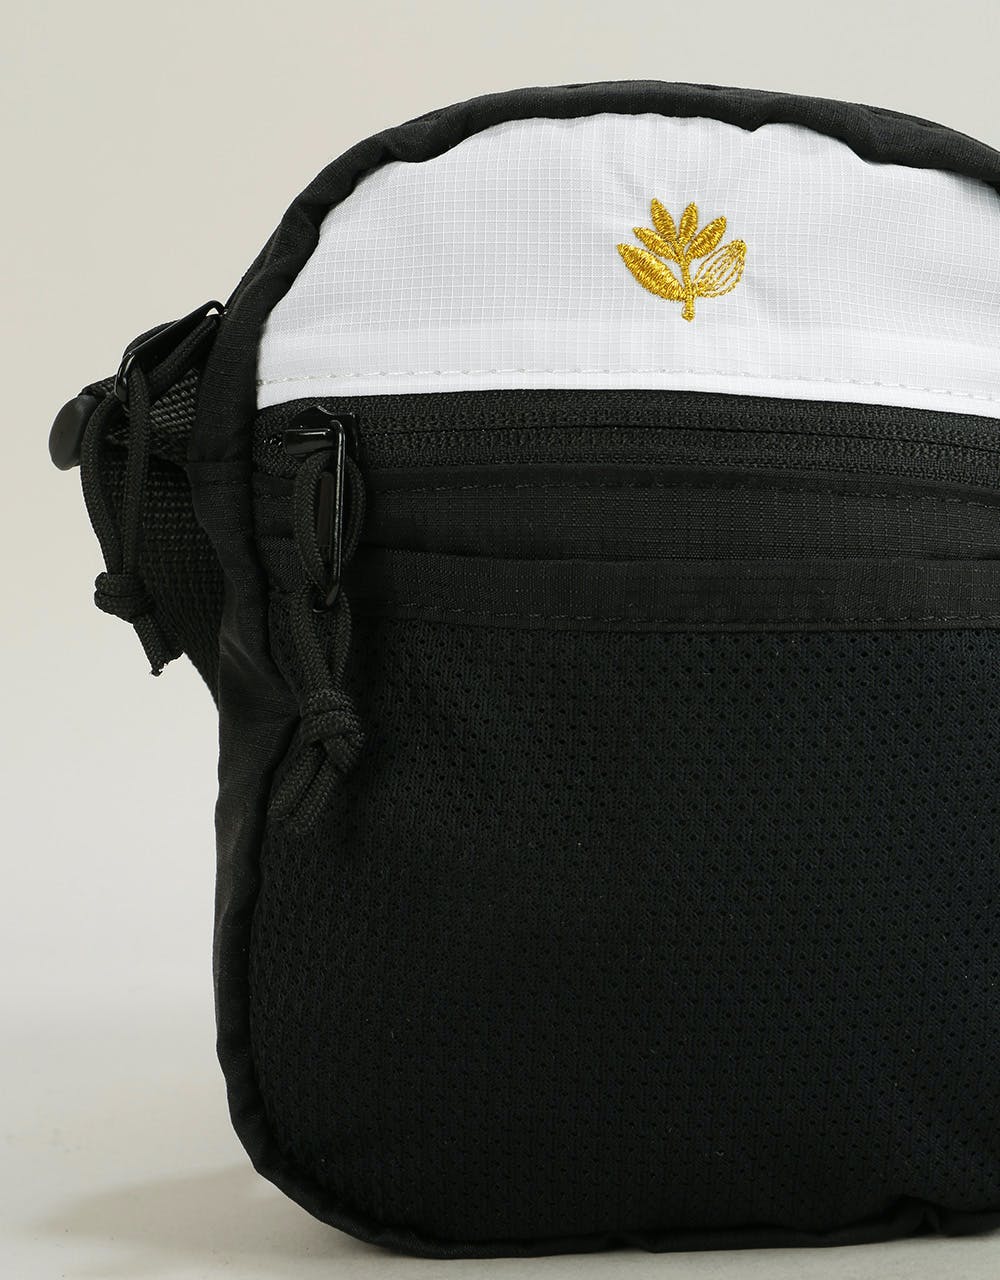 Magenta Sport Cross Body Bag - Black/White